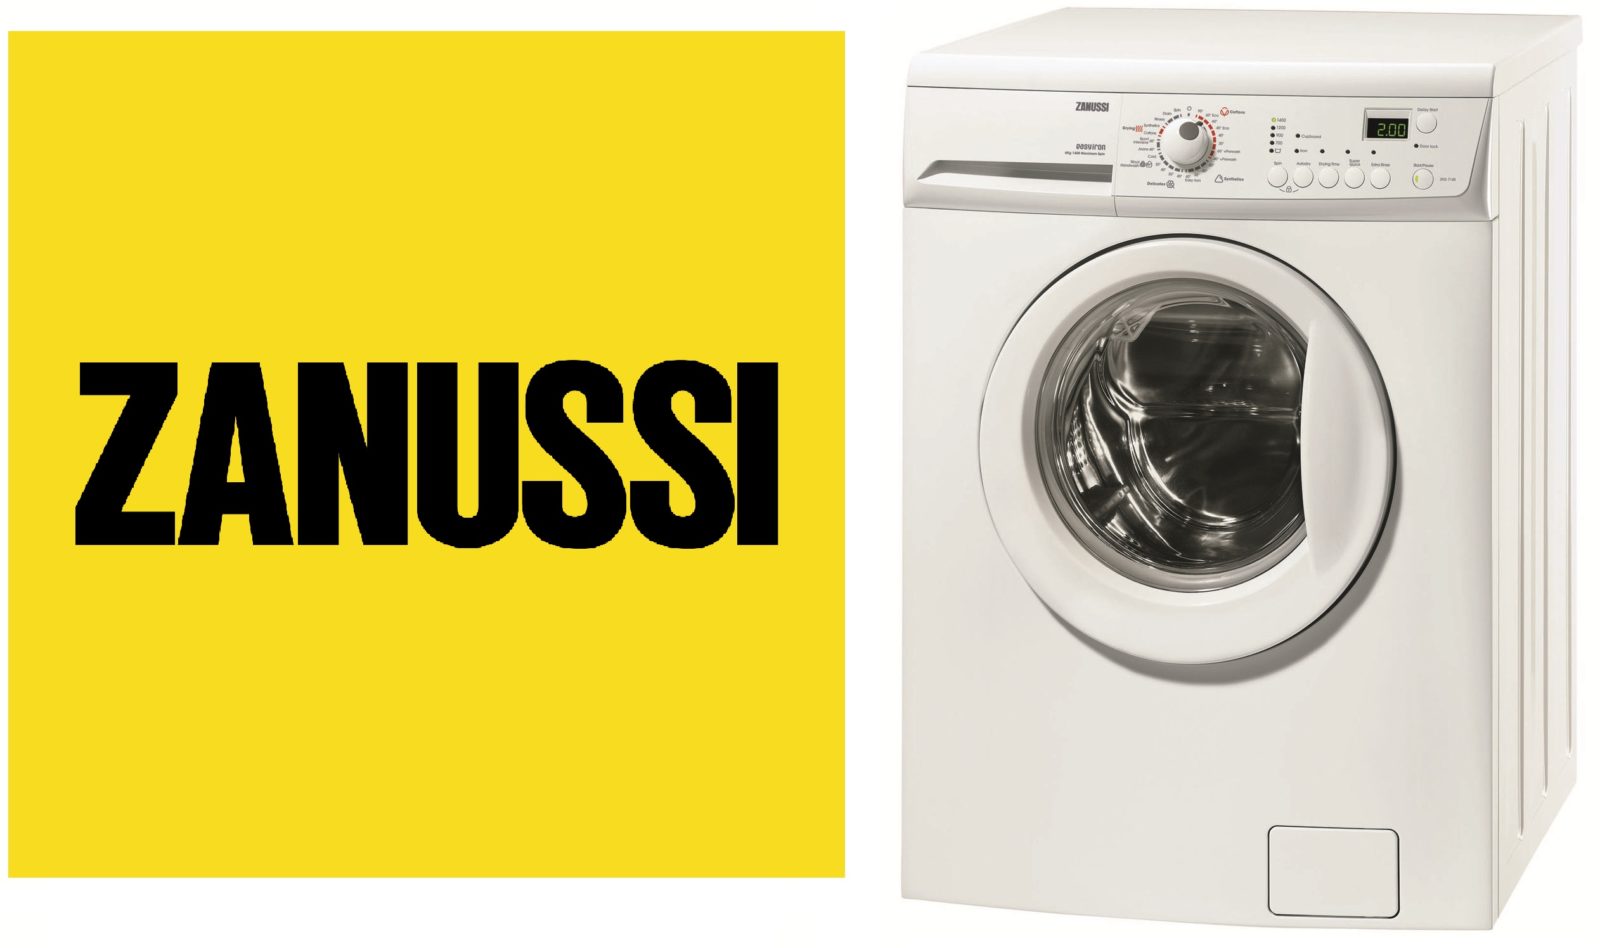 Zanussia washing machines